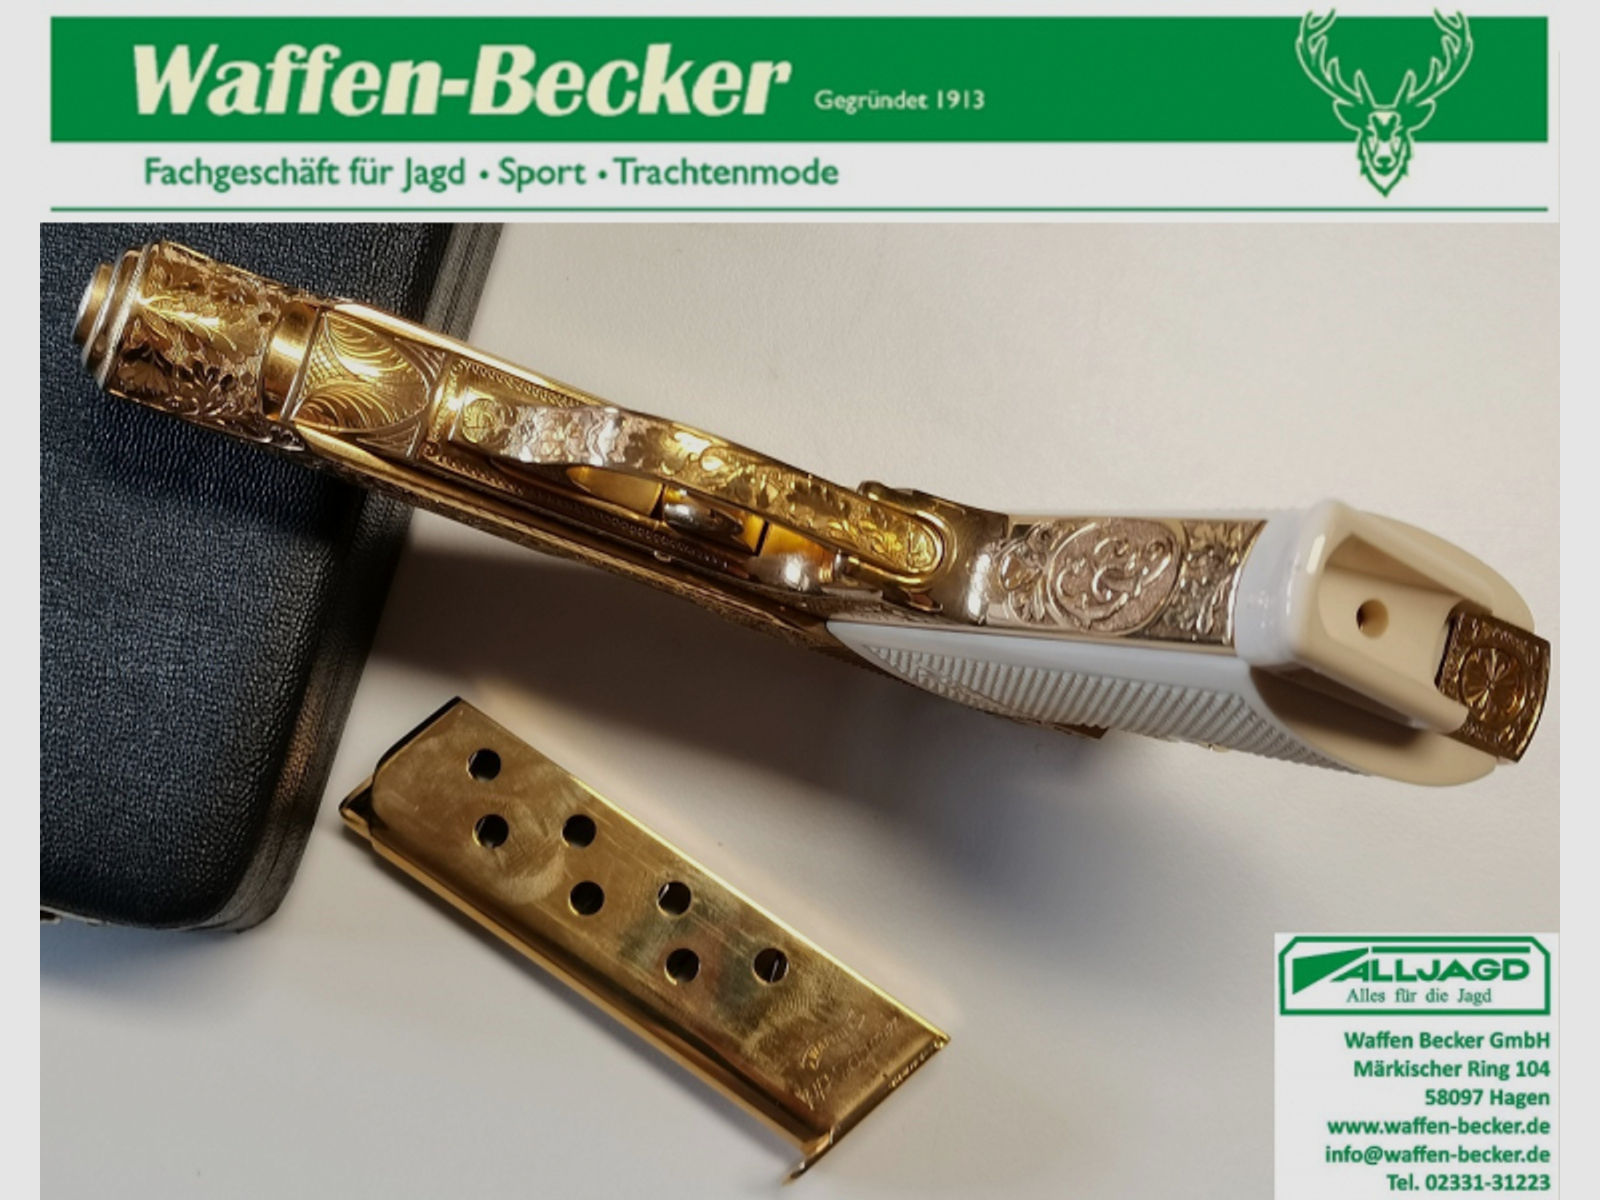 Pistole Walther PP Eichenlaubgravur, gold Kal. .7,65mm Browning in Geschenkschatulle